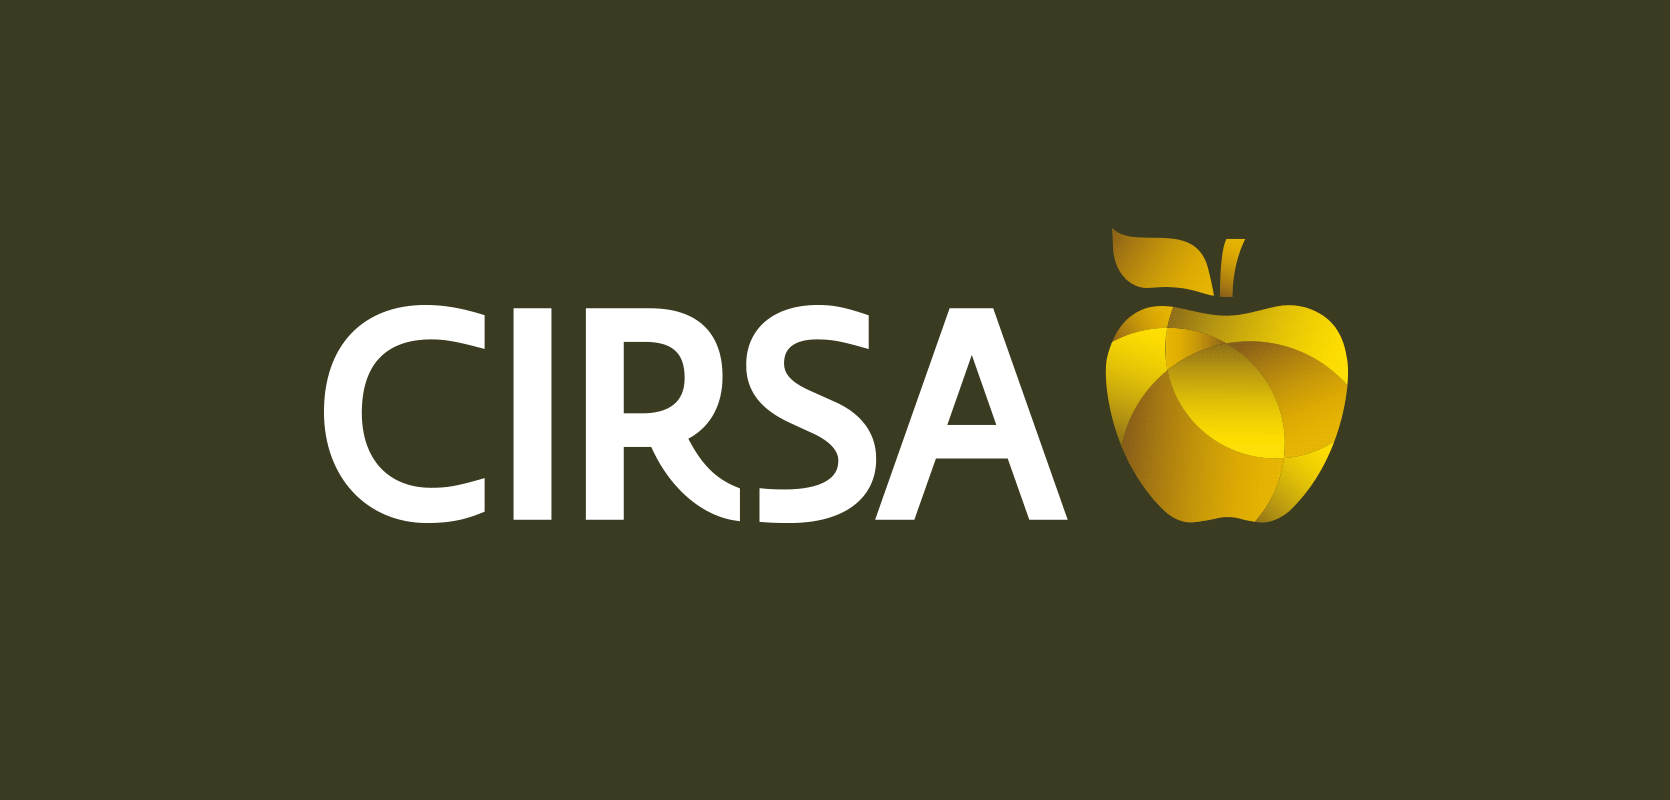 CIRSA gif logo color positivo negativo